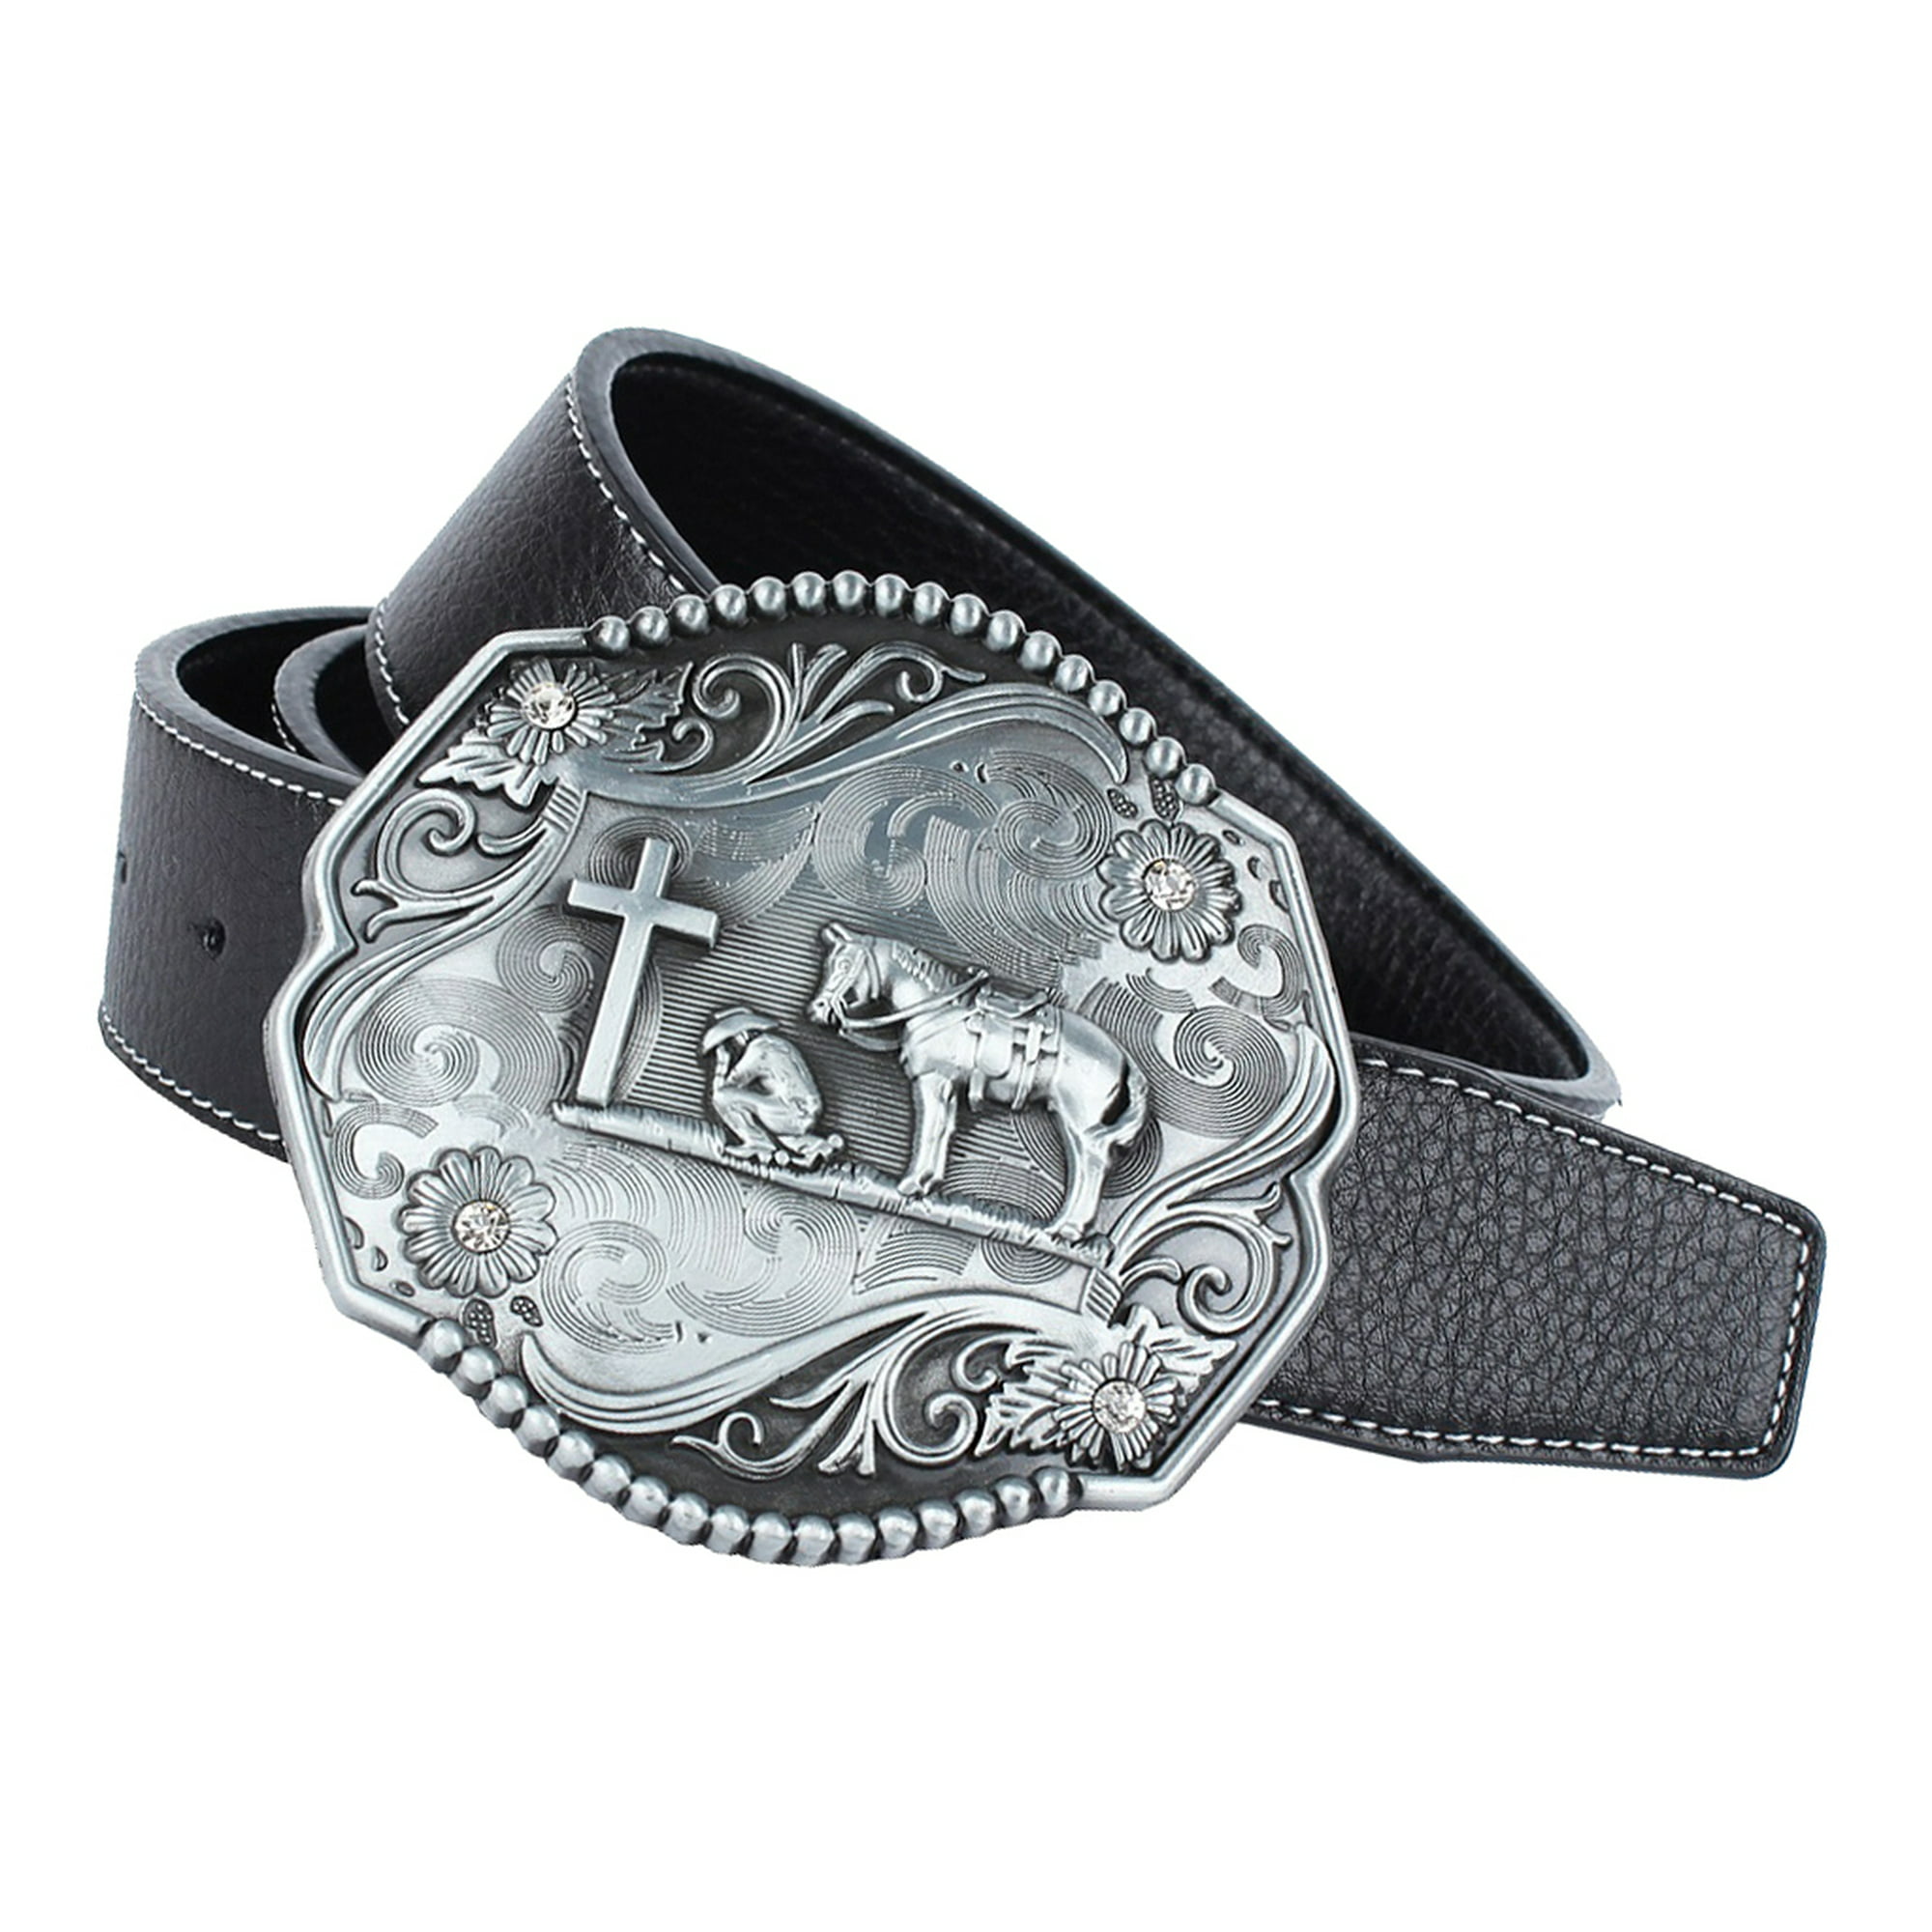 cinturones para hombre vaquero cinturon de hombres con hebilla Cowboy 120cm  New